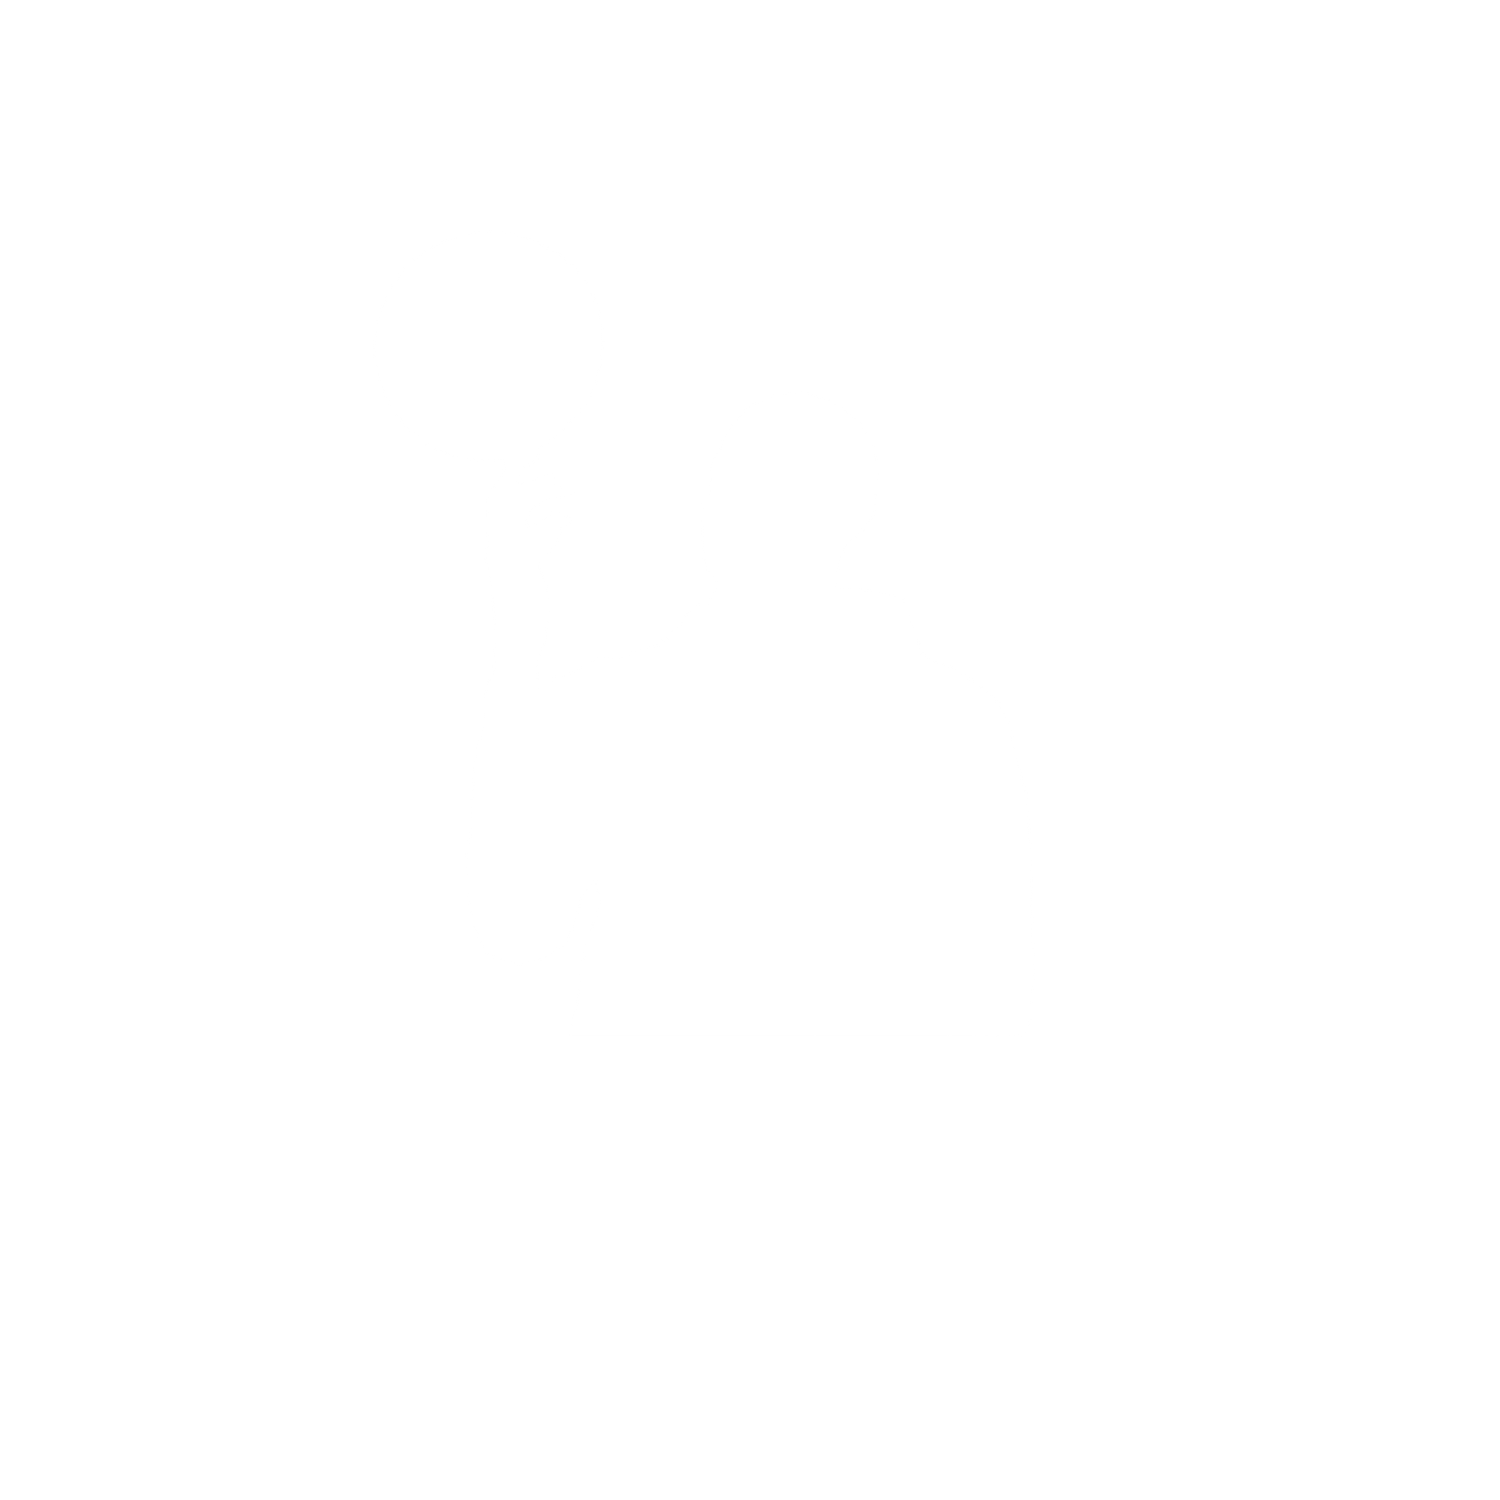 Jabari Smith Jr. Foundation